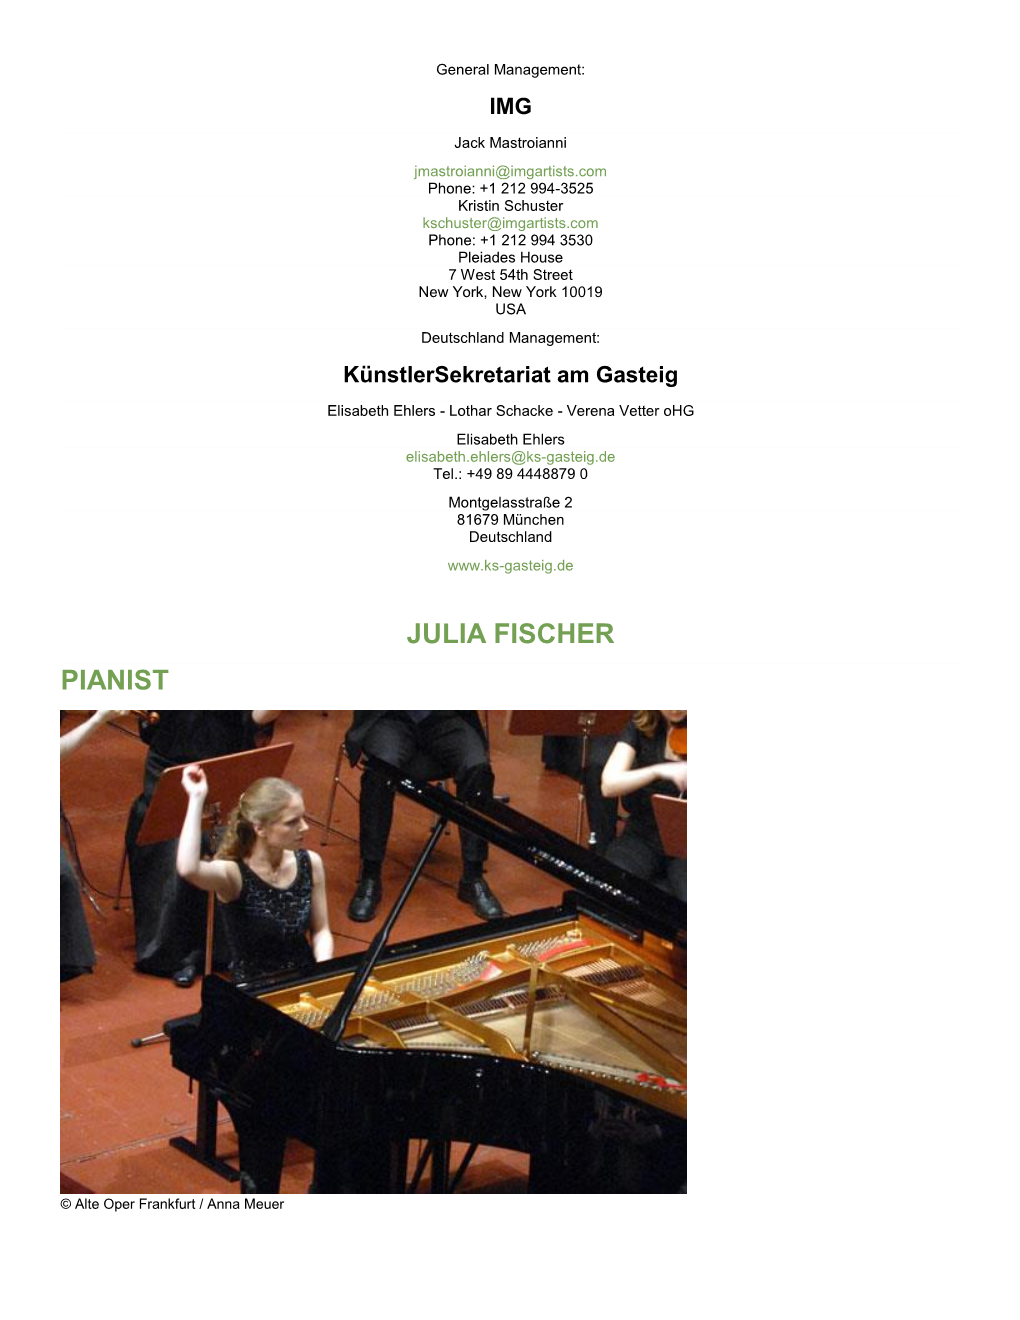 Julia Fischer Pianist